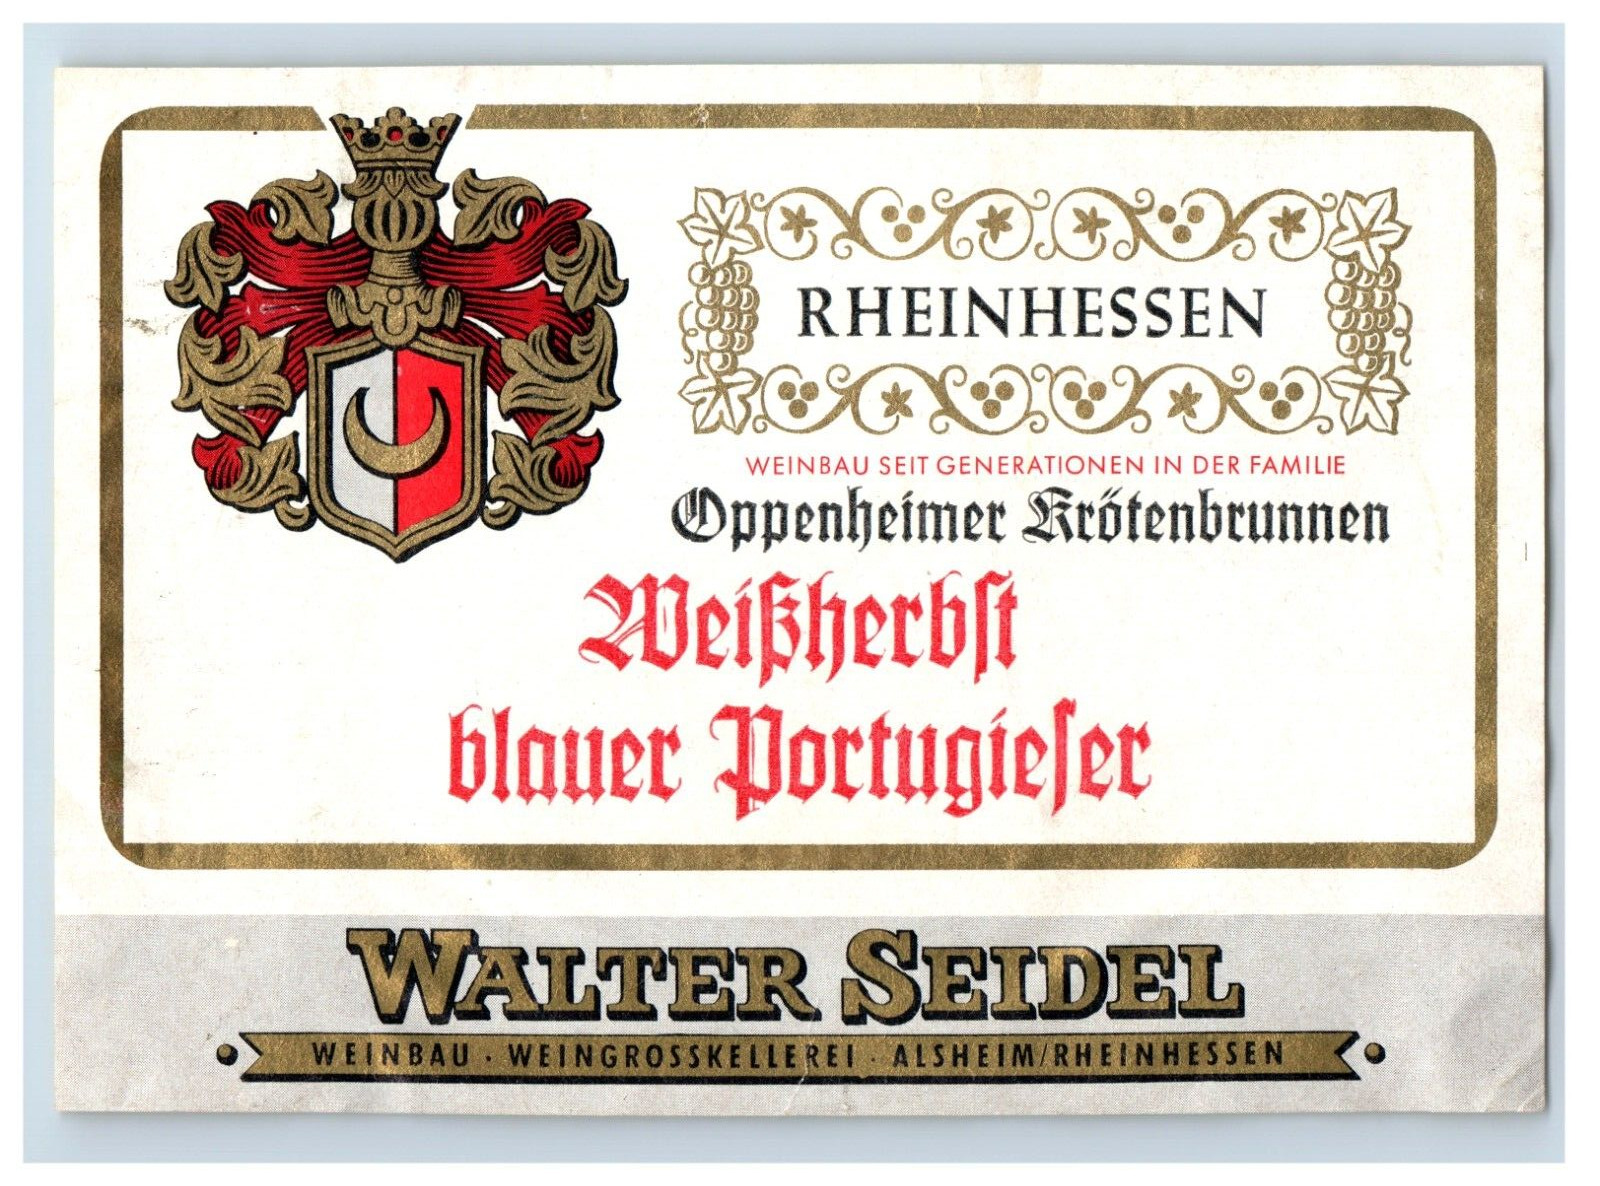 1960\'s-80\'s Rheinhessen Weibherbt Blauer Portugiefer German Wine Label S67E